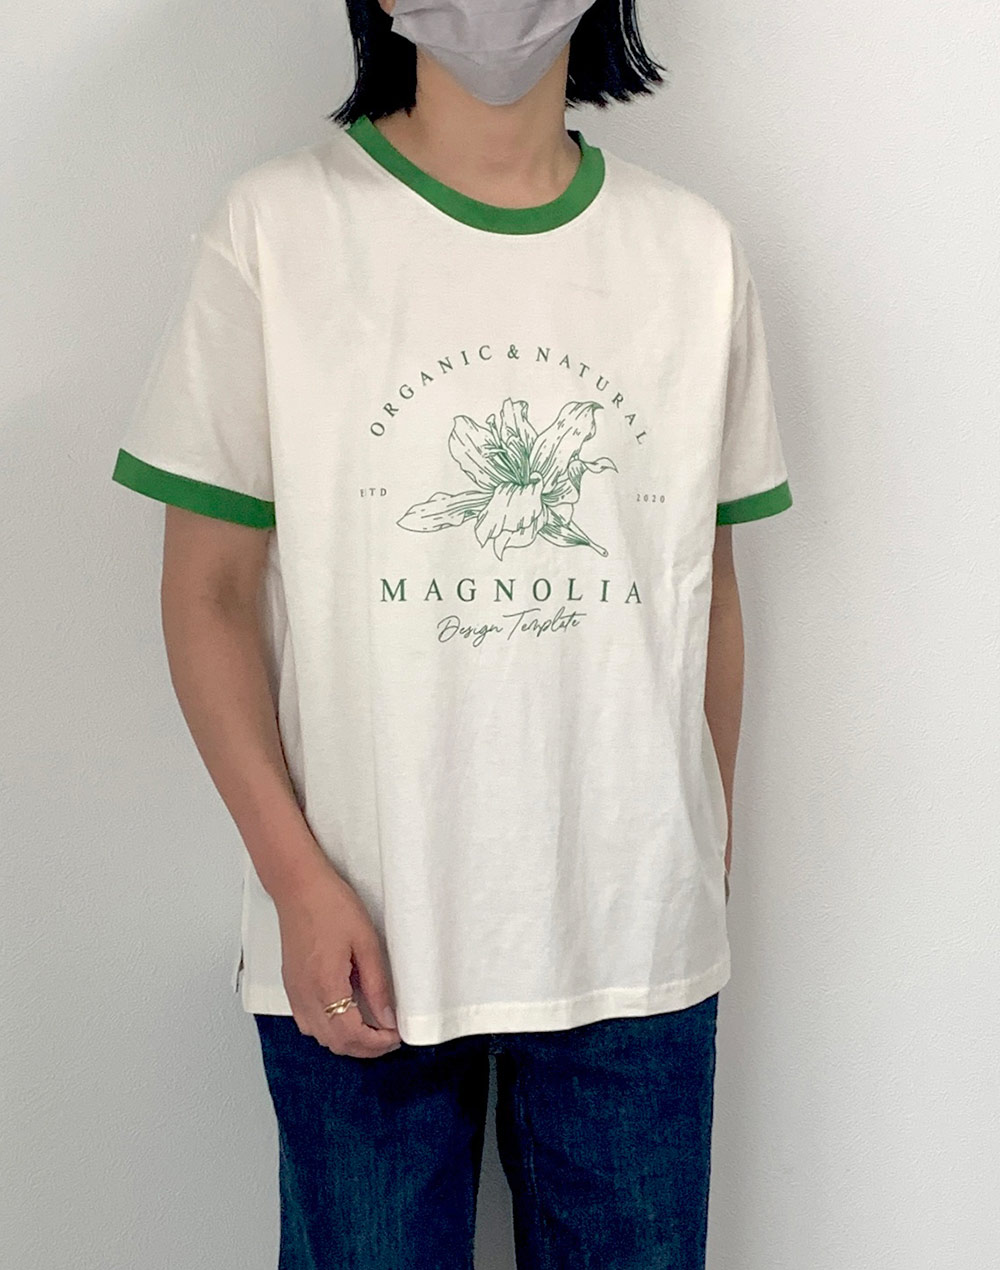 MAGNOLIA Tシャツ・b281523（トップス/Tシャツ）| walk_marin | 東京ガールズマーケット